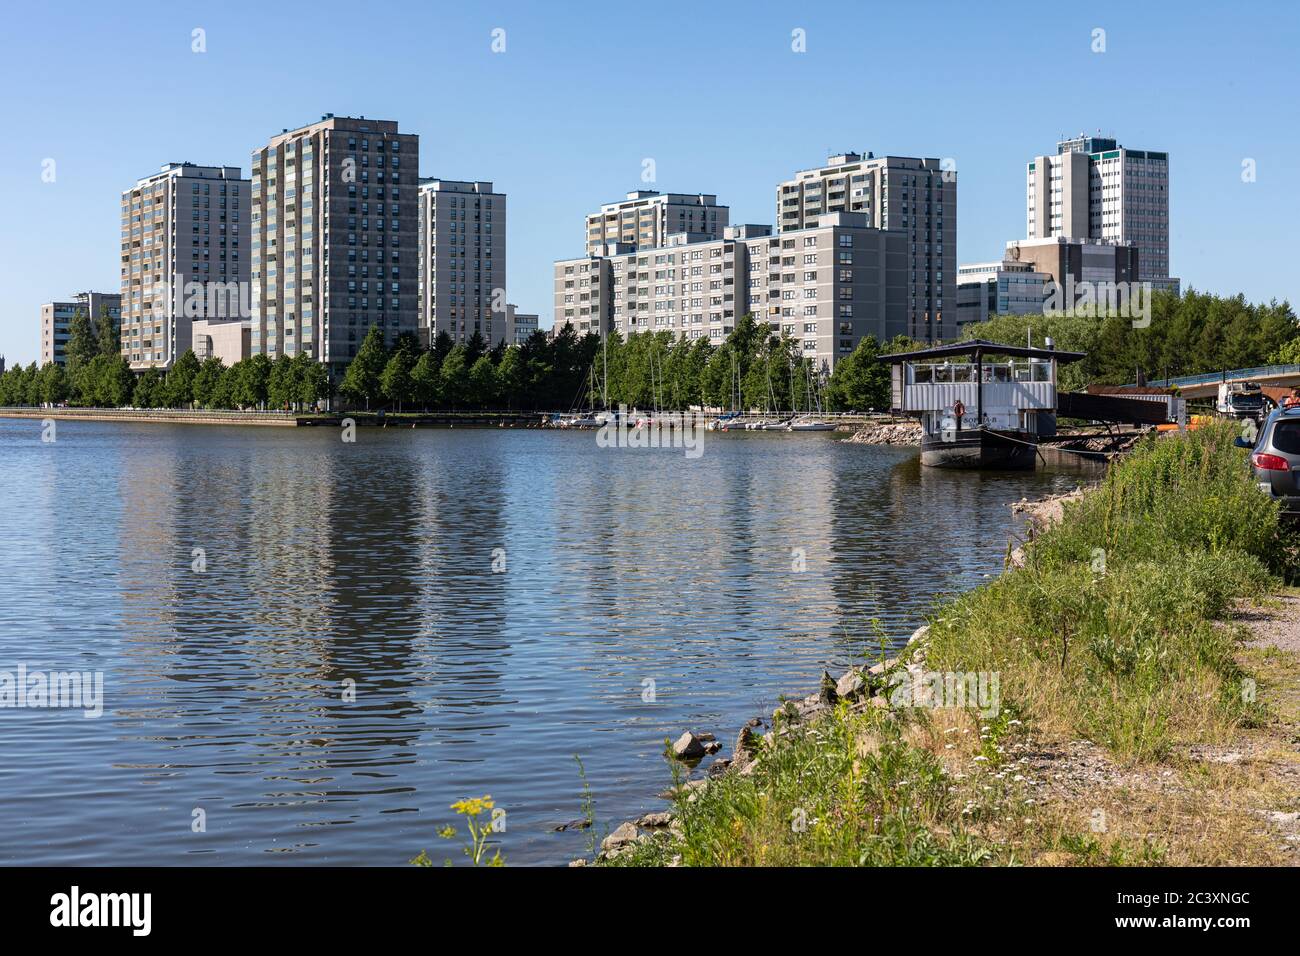 Merihaka Wohngebiet am Meer in Helsinki, Finnland Stockfoto